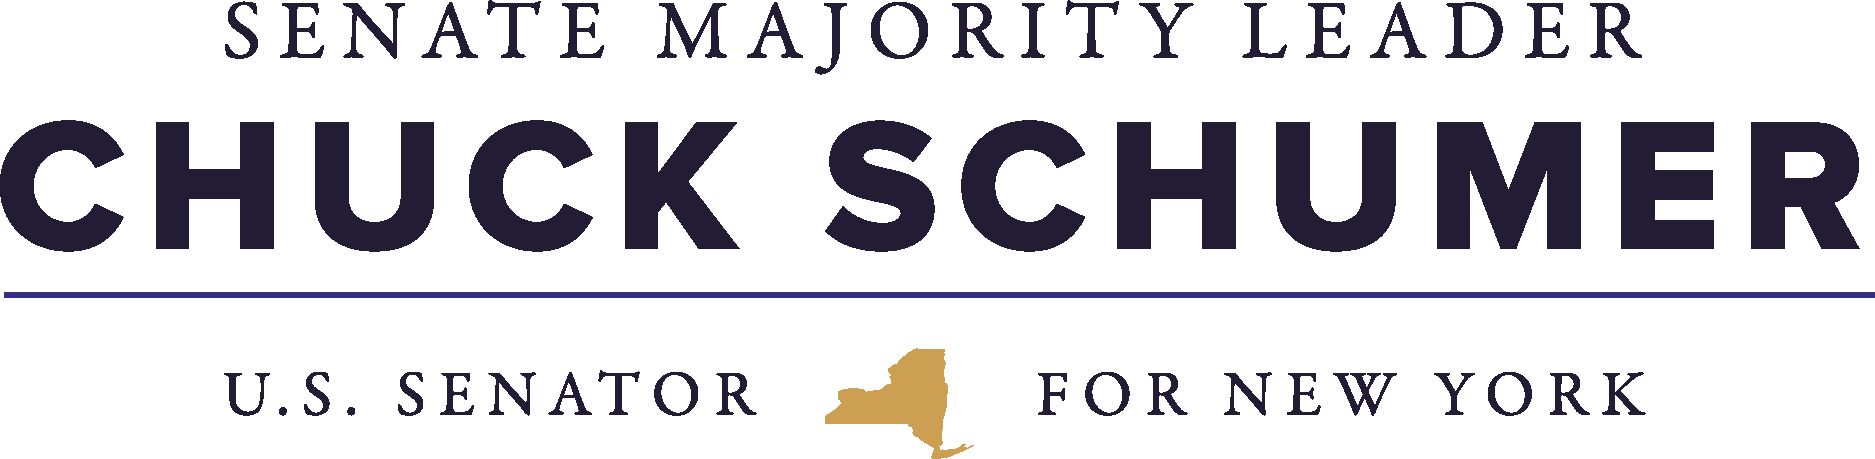 Chuck Schumer Senate Majority Leader Logo Vector